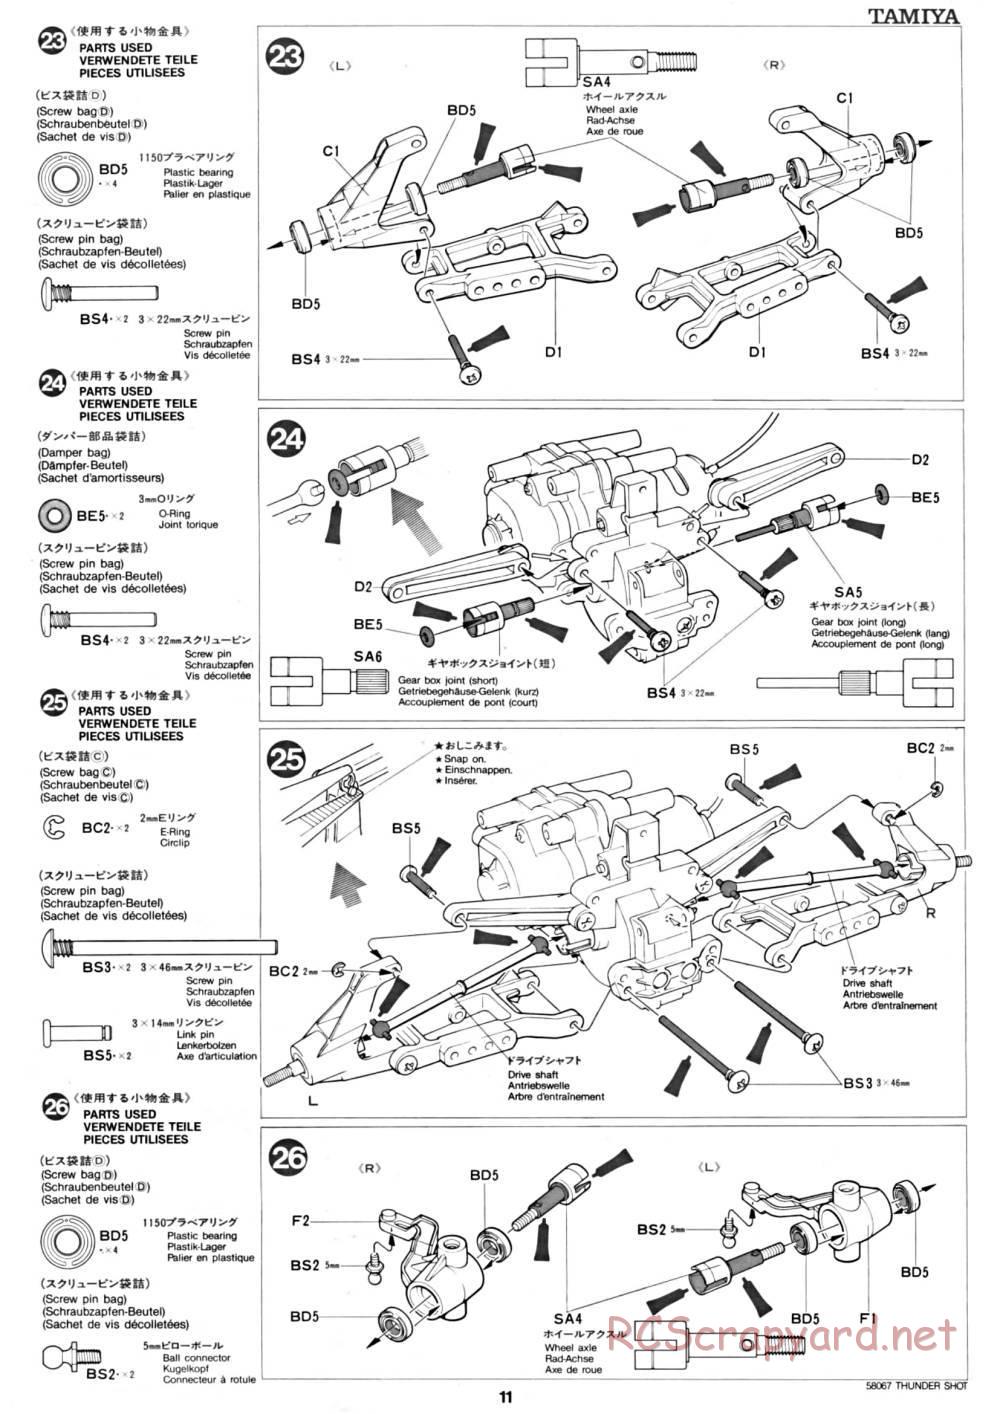 Tamiya - Thunder Shot - 58067 - Manual - Page 11